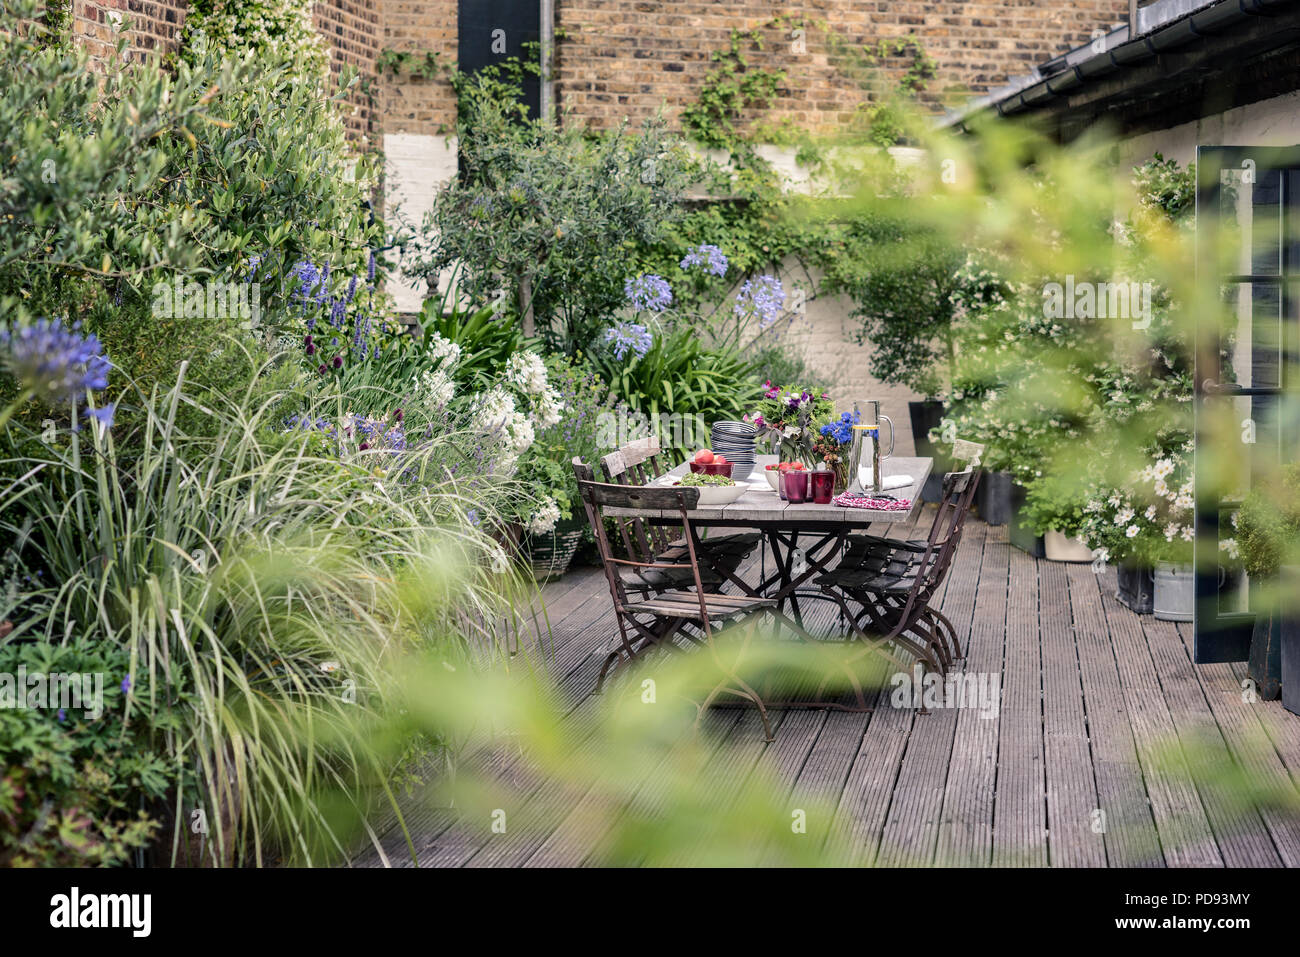 Alte französische Bistro Stühle um langen Holztisch auf Garten Dachterrasse mit Belag. Agapanthus und Jasmin blüht im Hintergrund Stockfoto